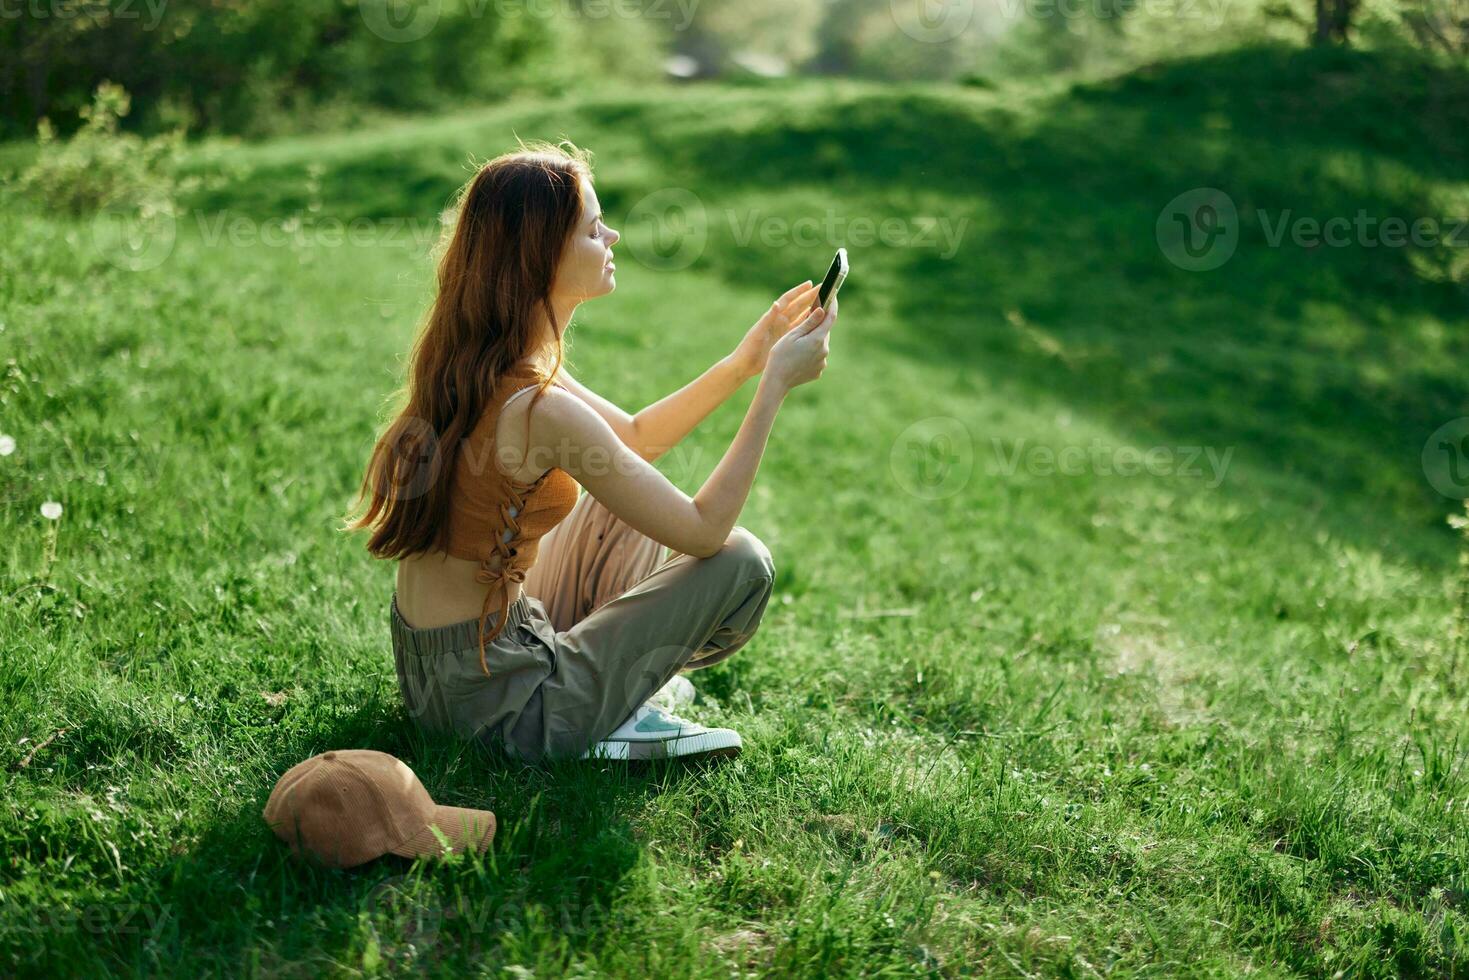 een jong gelukkig vrouw zittend in de park Aan de groen gras in natuur met haar telefoon in haar handen in haar gewoontjes kleren en chatten via video koppeling, de concept van gezond recreatie meditatie foto